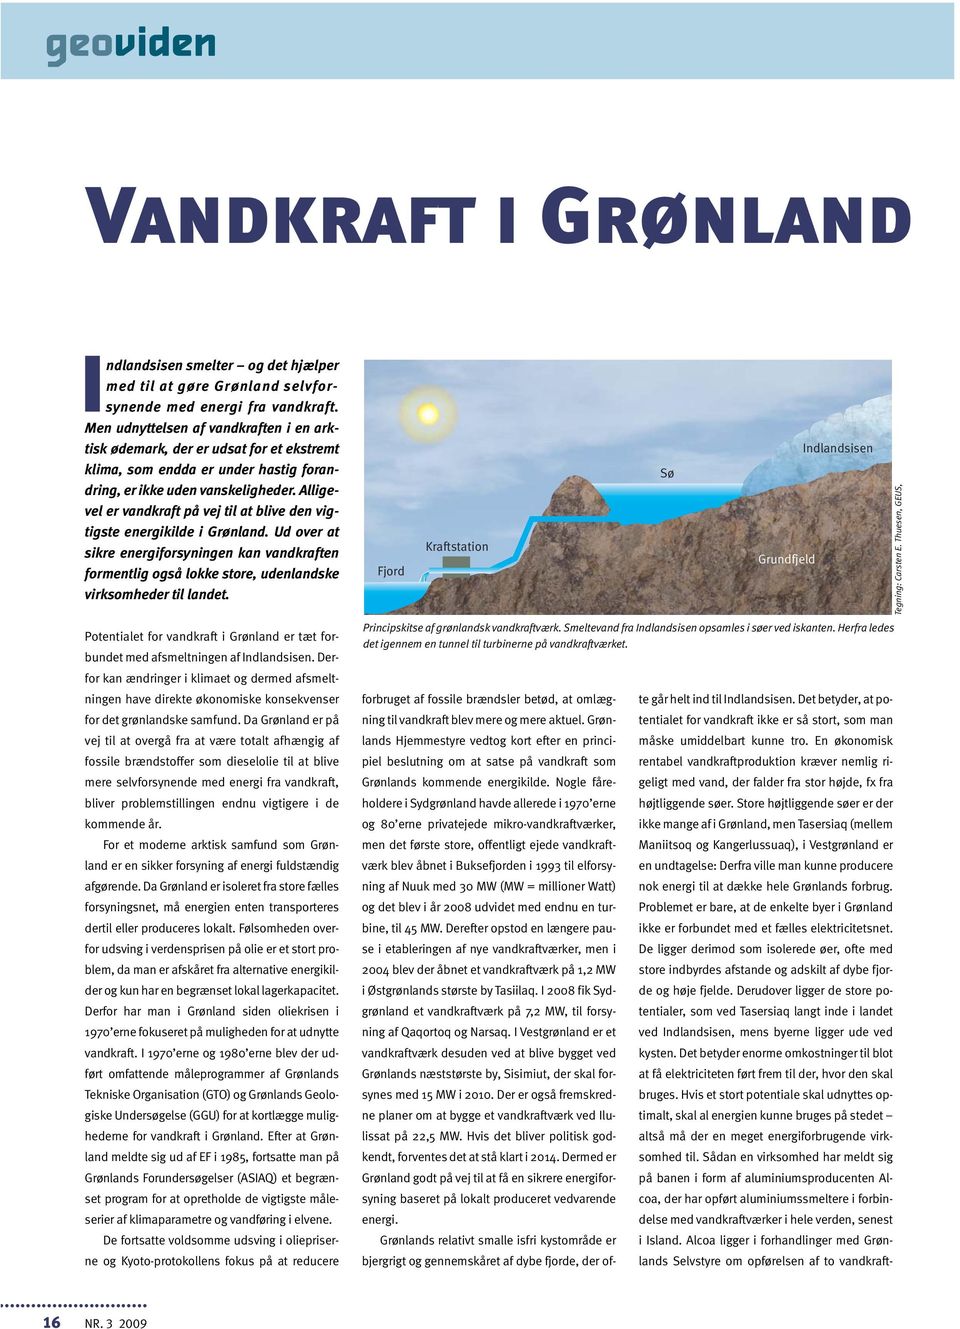 Alligevel er vandkraft på vej til at blive den vigtigste energikilde i Grønland. Ud over at sikre energiforsyningen kan vandkraften formentlig også lokke store, udenlandske virksomheder til landet.